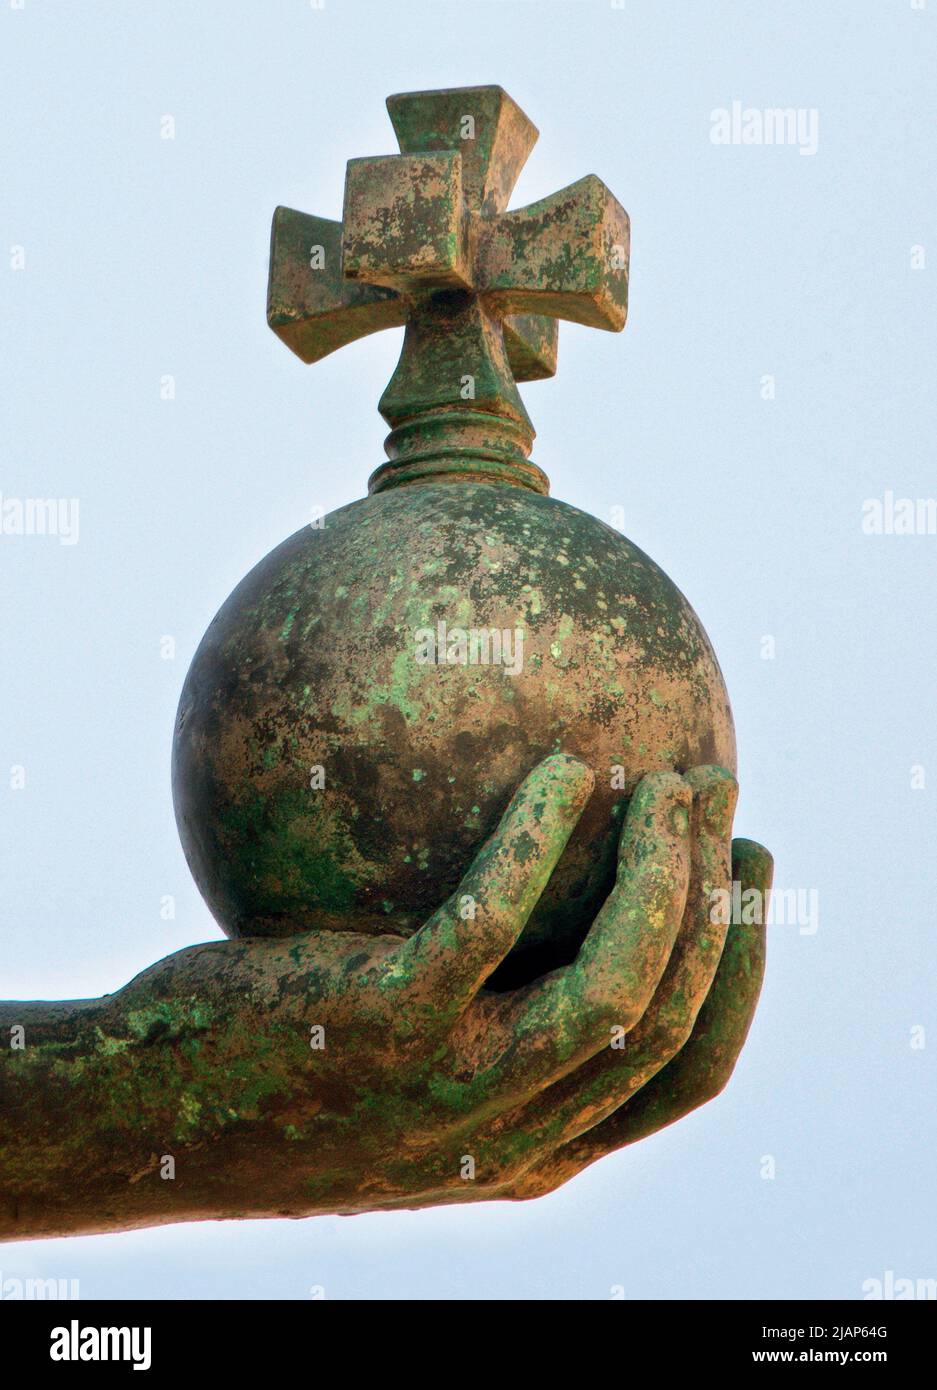 Detalle de la orbe en la Estatua de la Paz en el límite de Brighton Hove. Brighton y Hove, Inglaterra. En marzo de 2022 la orbe desaparecida, pero fue posteriormente recuperada. Foto de stock